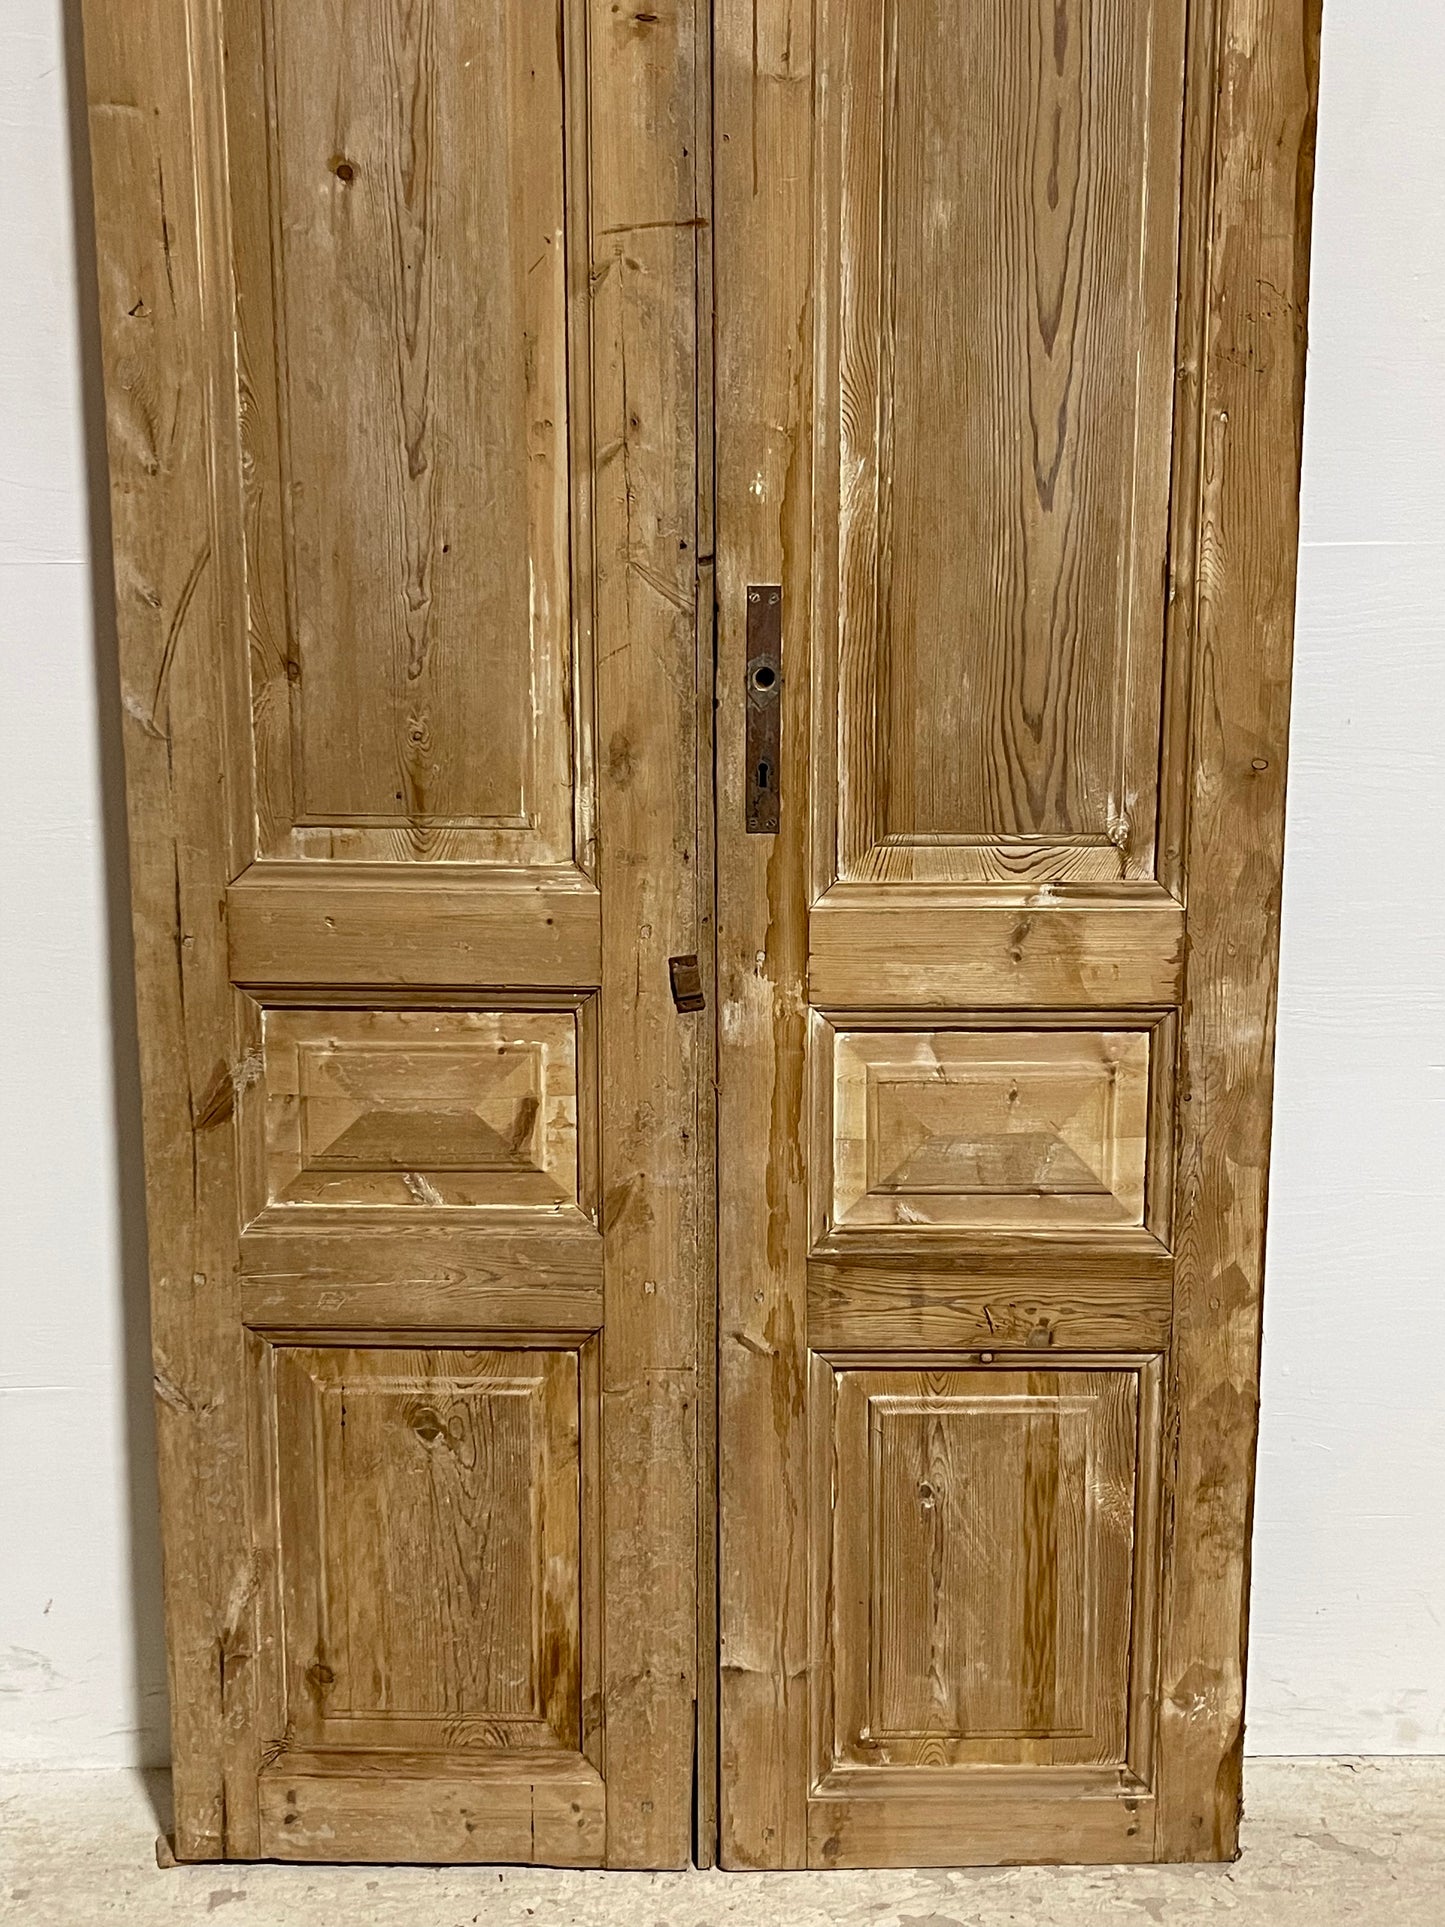 Antique French panel Doors (94.25x39.75) J618